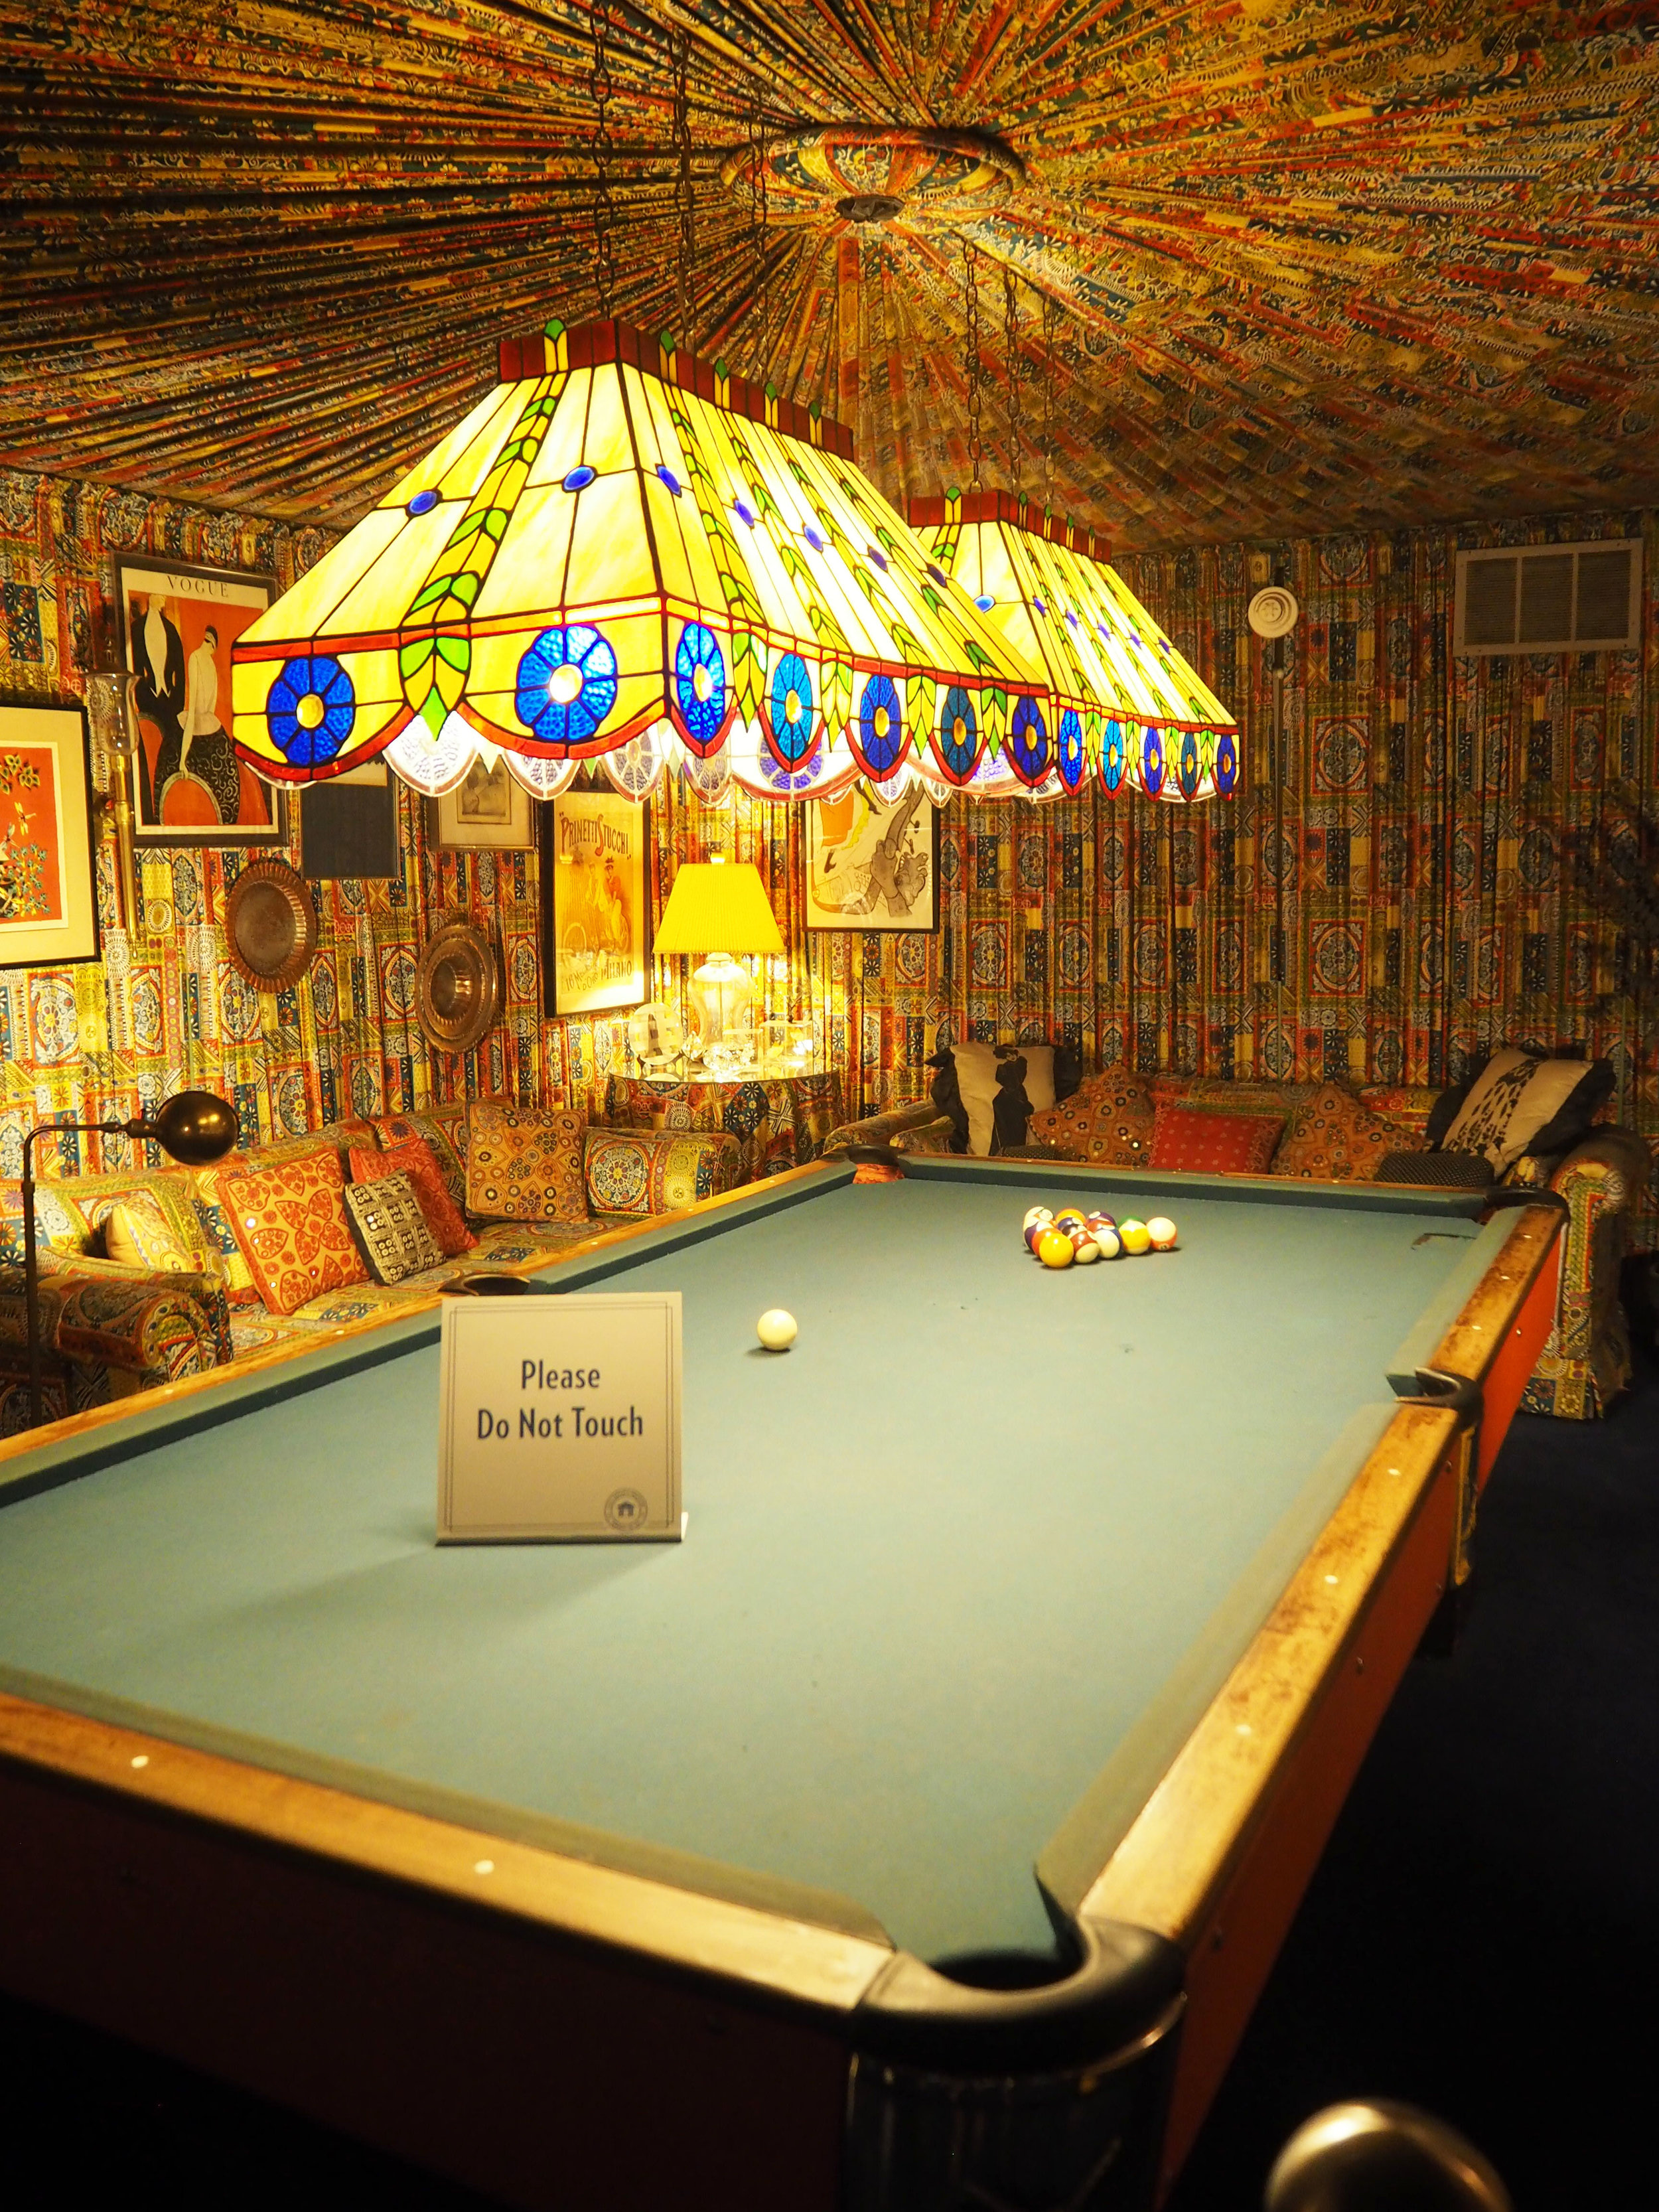 Elvis Presley | Graceland. The billiard Room. Designer Bill Eubanks helped design the pool room at Graceland.